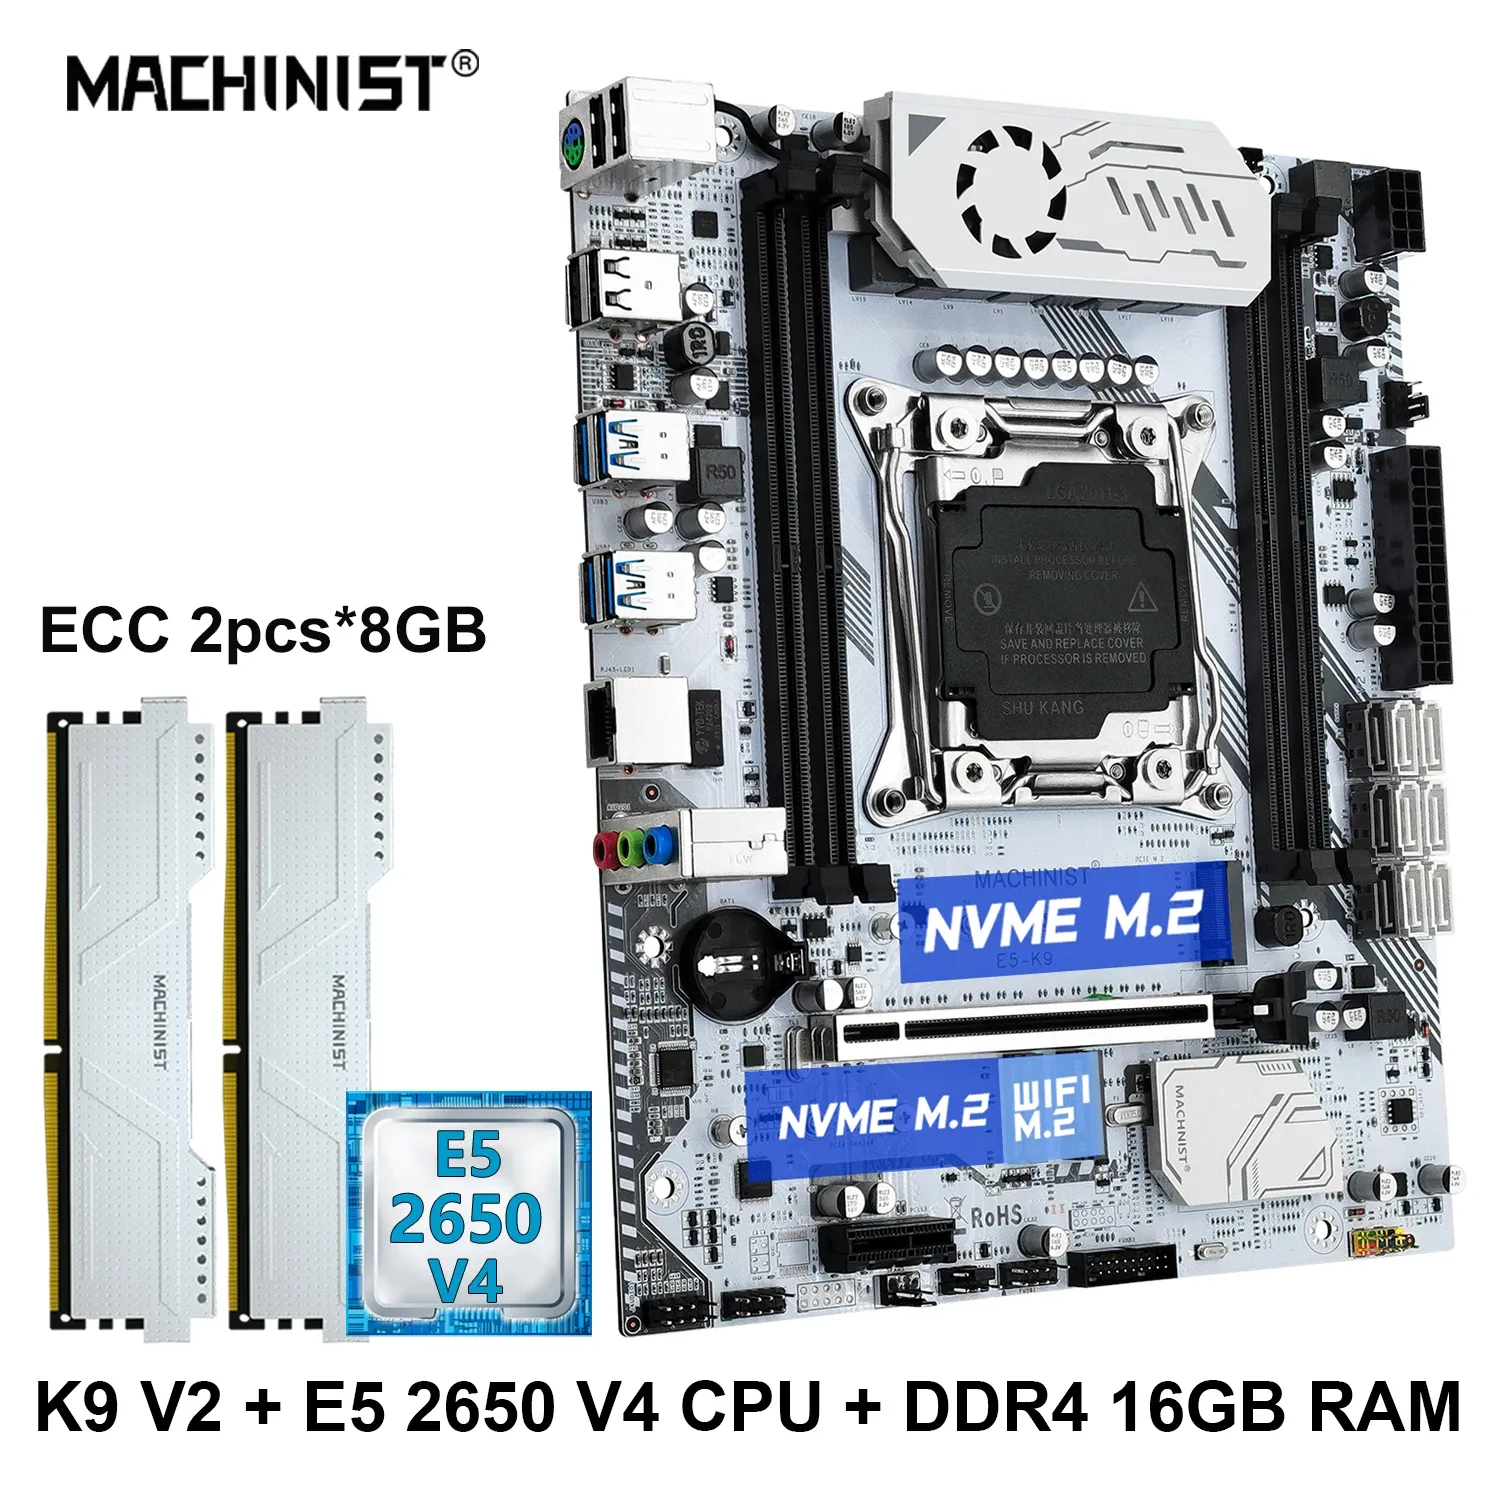 마더 보드 machinis x99 마더 보드 세트 LGA 20113 키트 XEON E5 2650 V4 CPU 프로세서 DDR4 8GB*2 RAM 메모리 MATX M.2 NVME SSD PCIE3.0 K9 V2